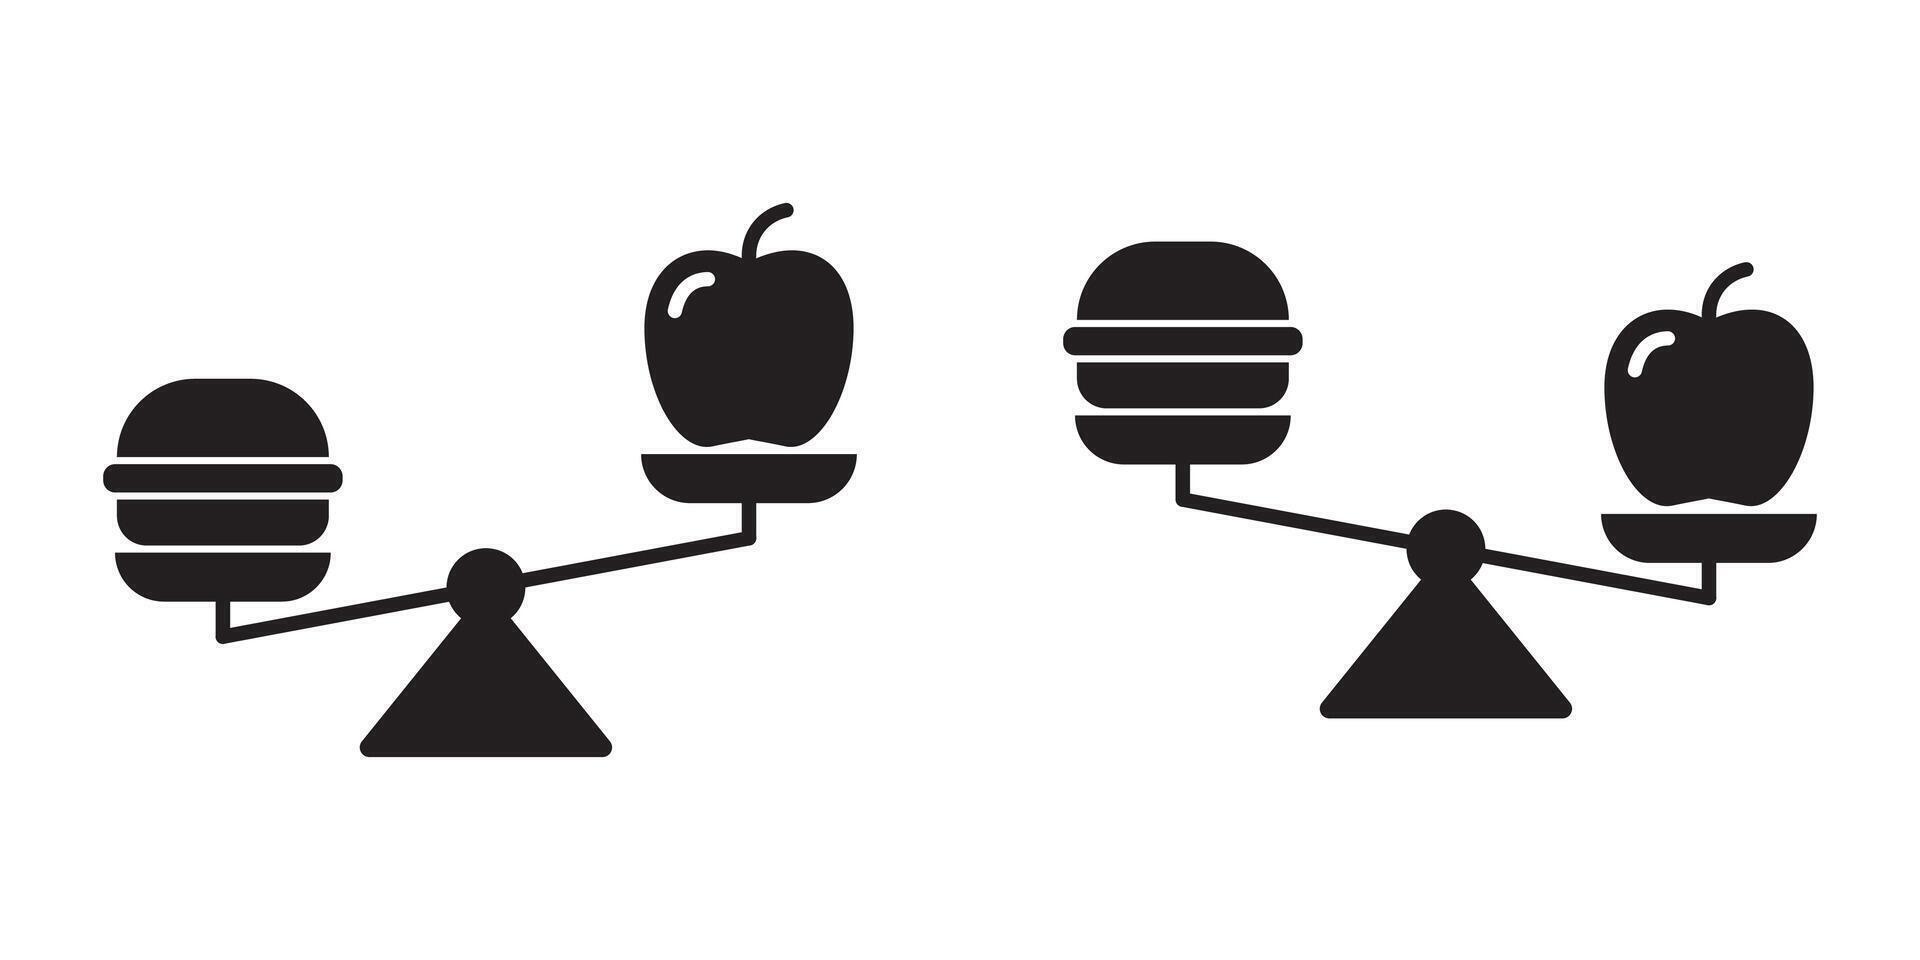 Rahmen Symbol mit Burger und Apfel An. gesund Ernährung Konzept. eben Vektor Illustration.